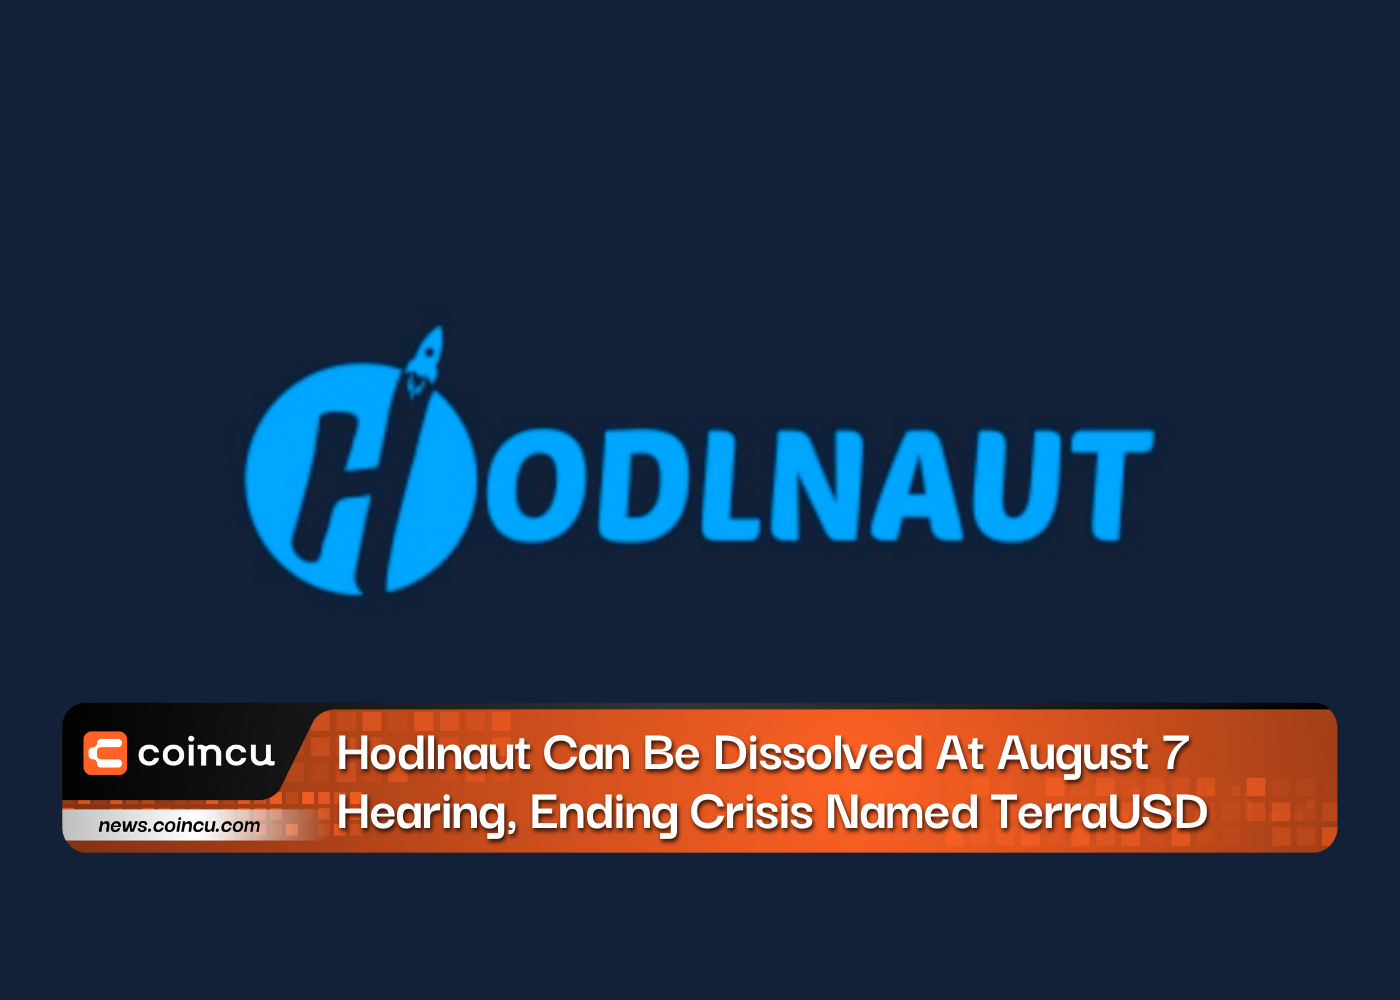 ホドルノートは7月XNUMX日の公聴会で解散可能、テラUSDという名の危機に終止符